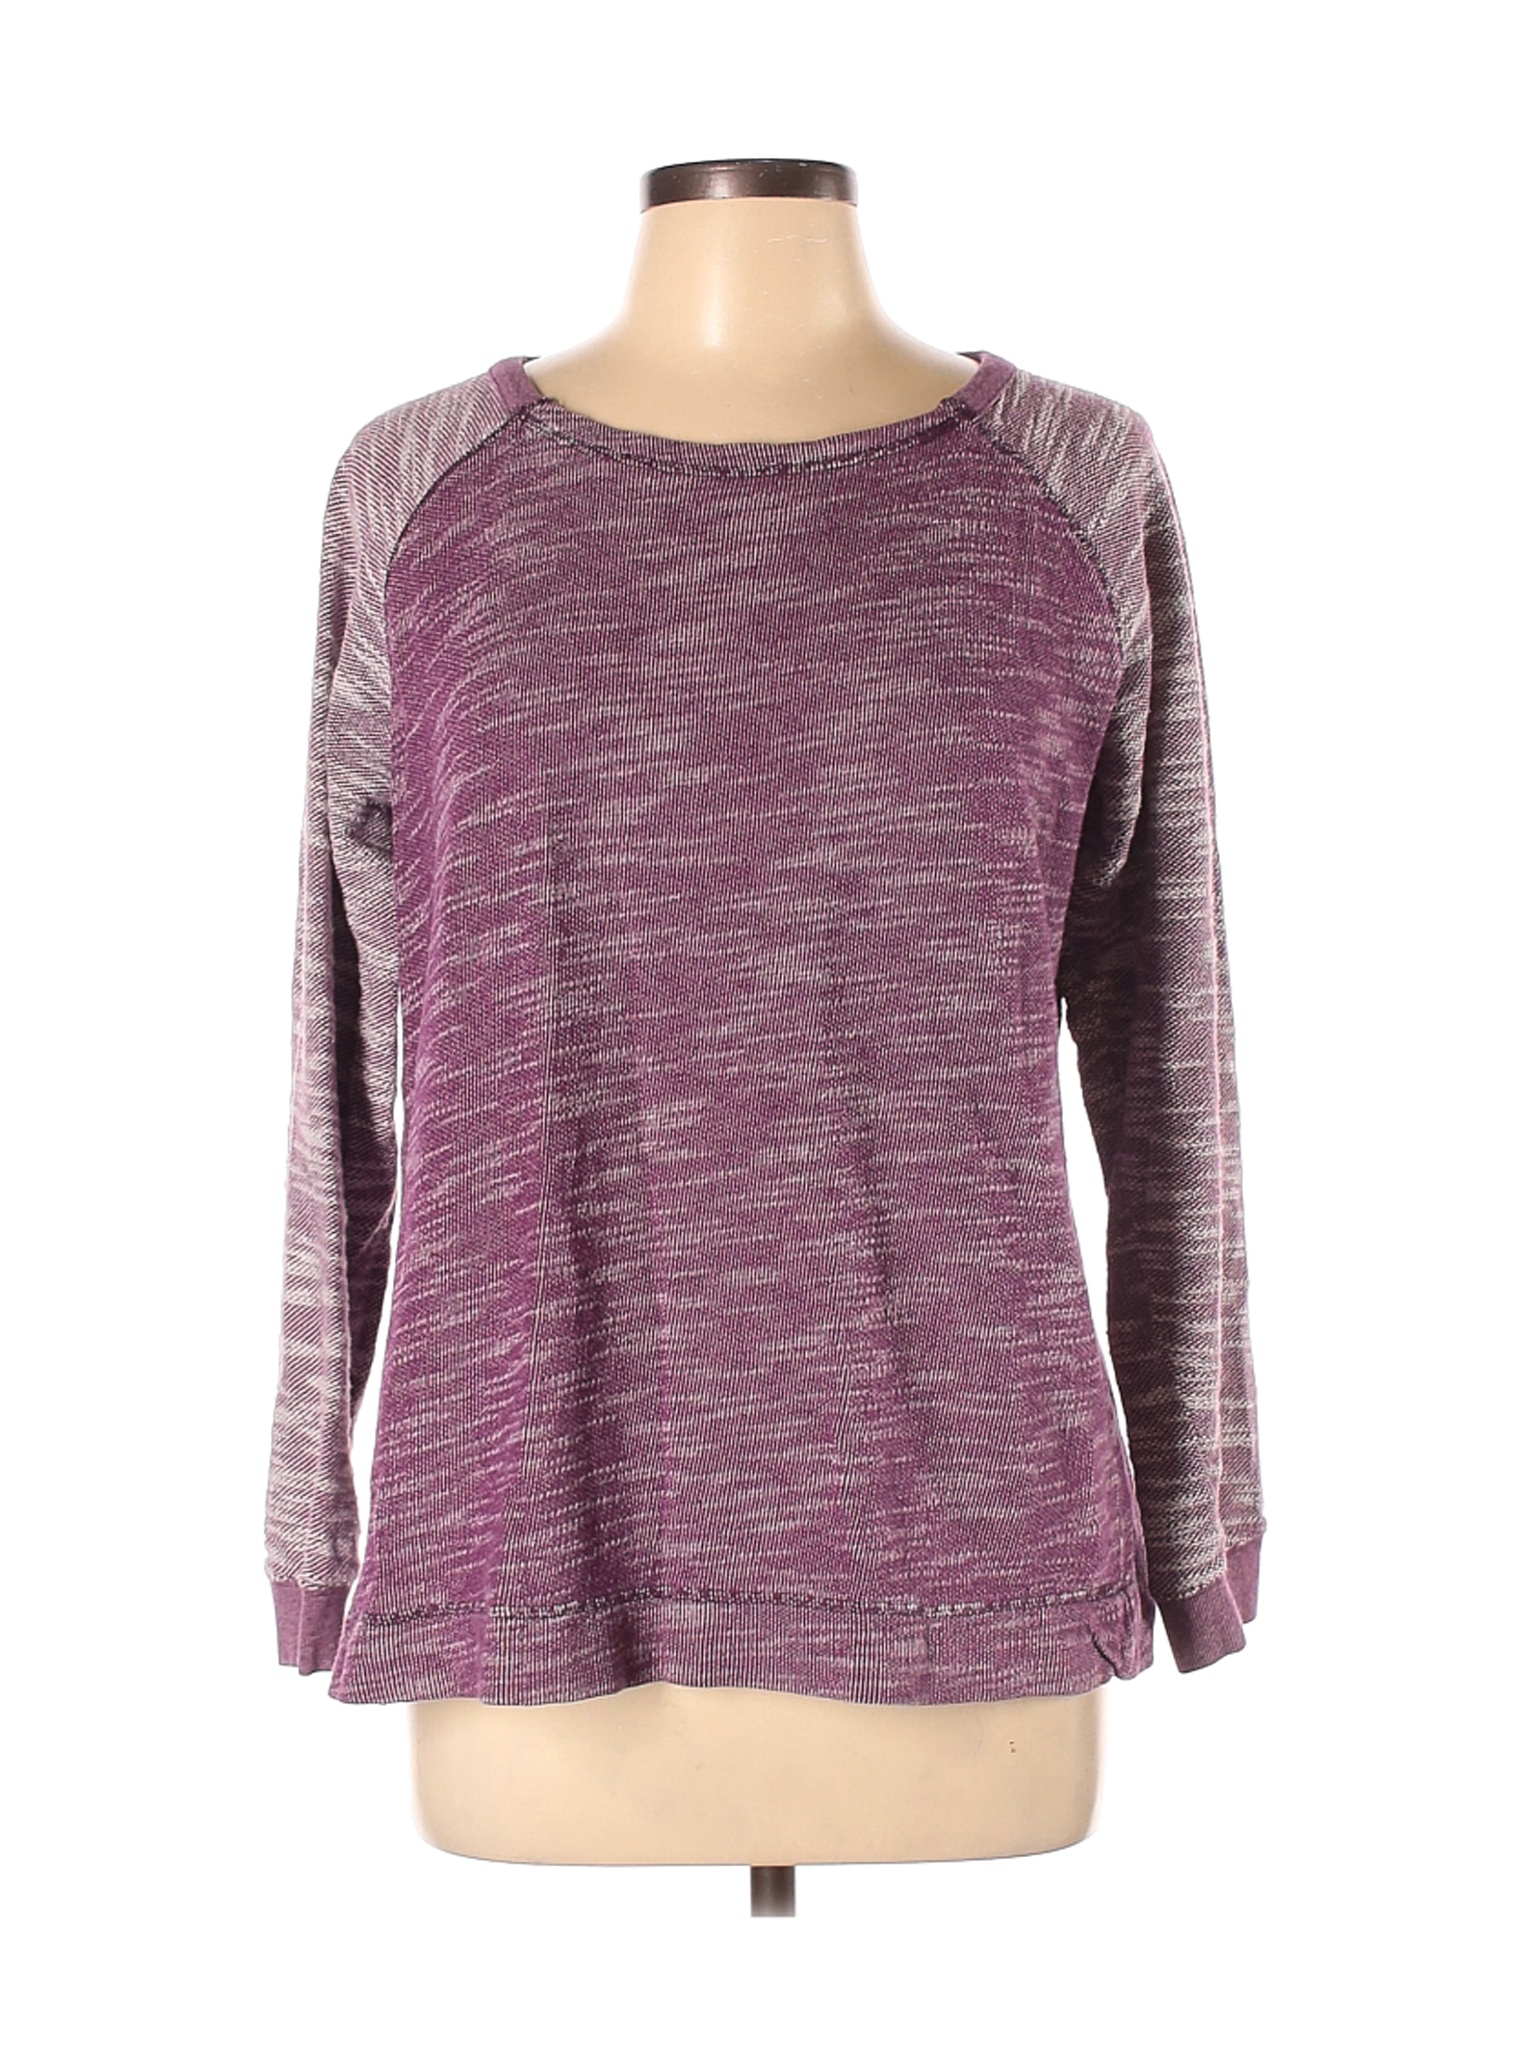 Champion Women Purple Sweatshirt L | eBay